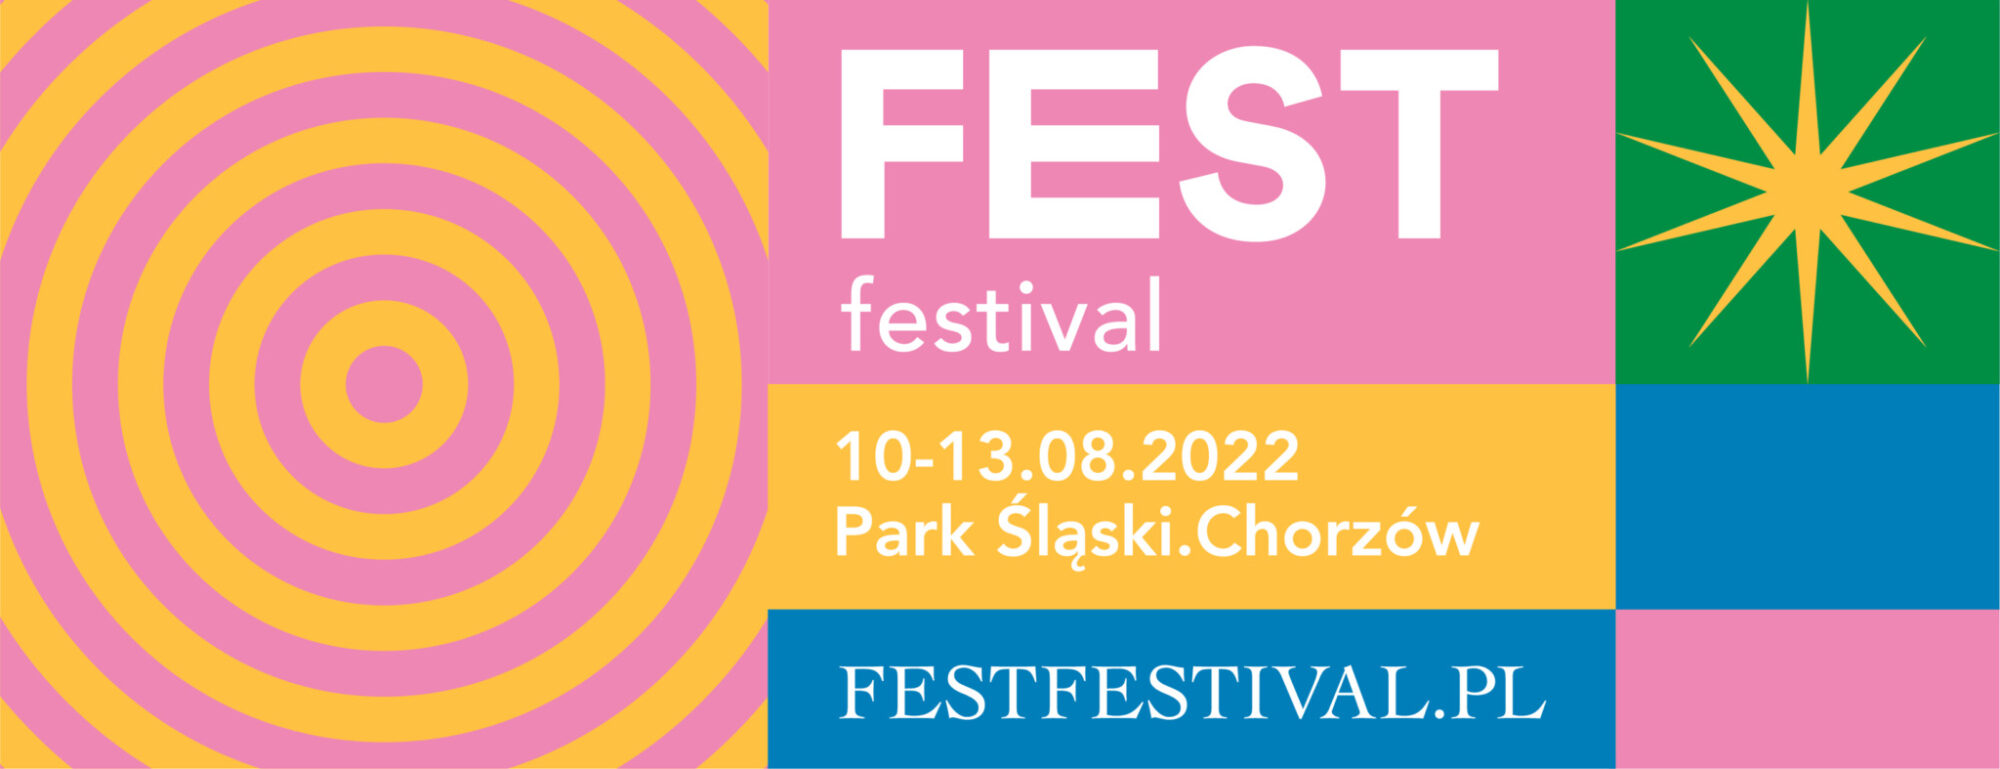 FEST FESTIVAL 2022